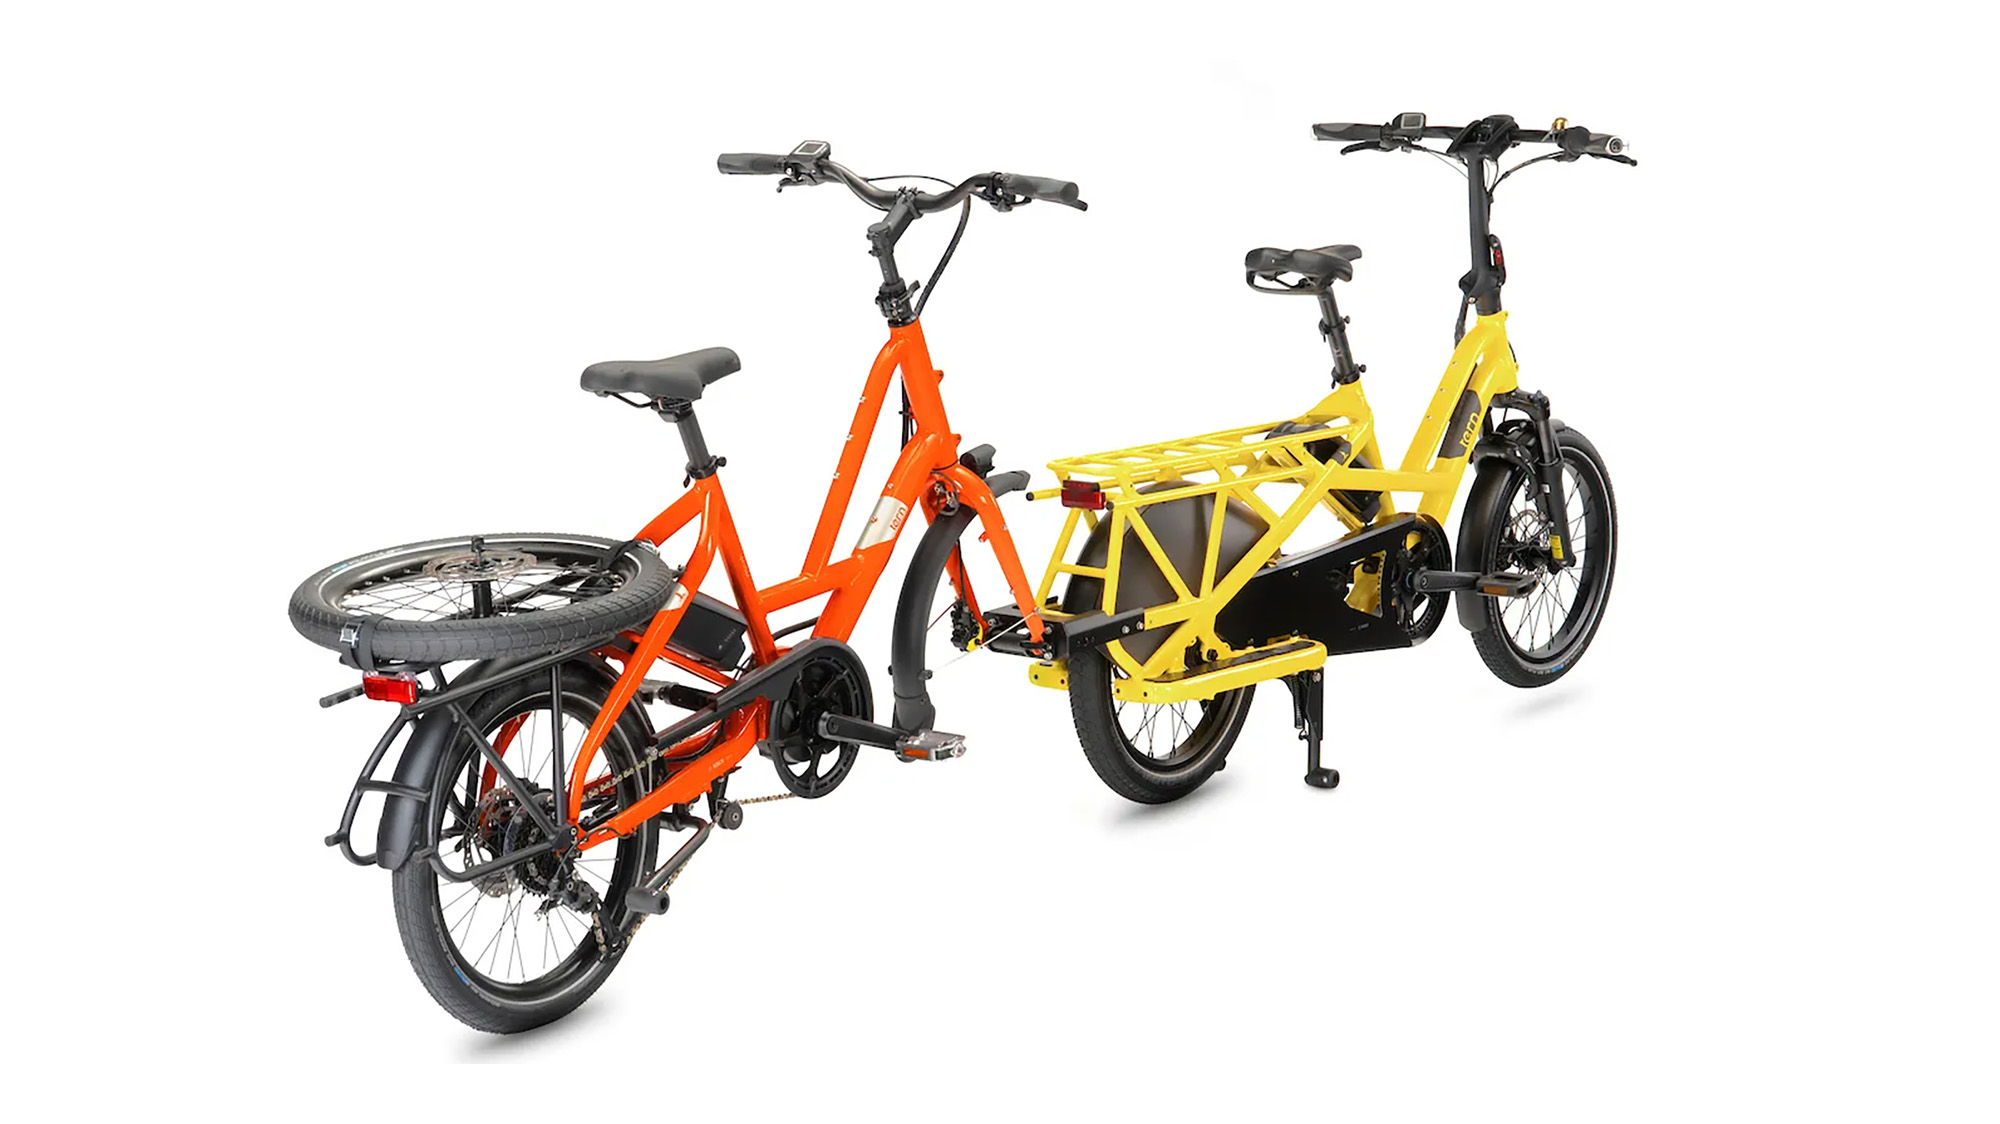 Neues Tern Bike Tow Kit zieht ein Bike am Bike: Fahrräder mit dem